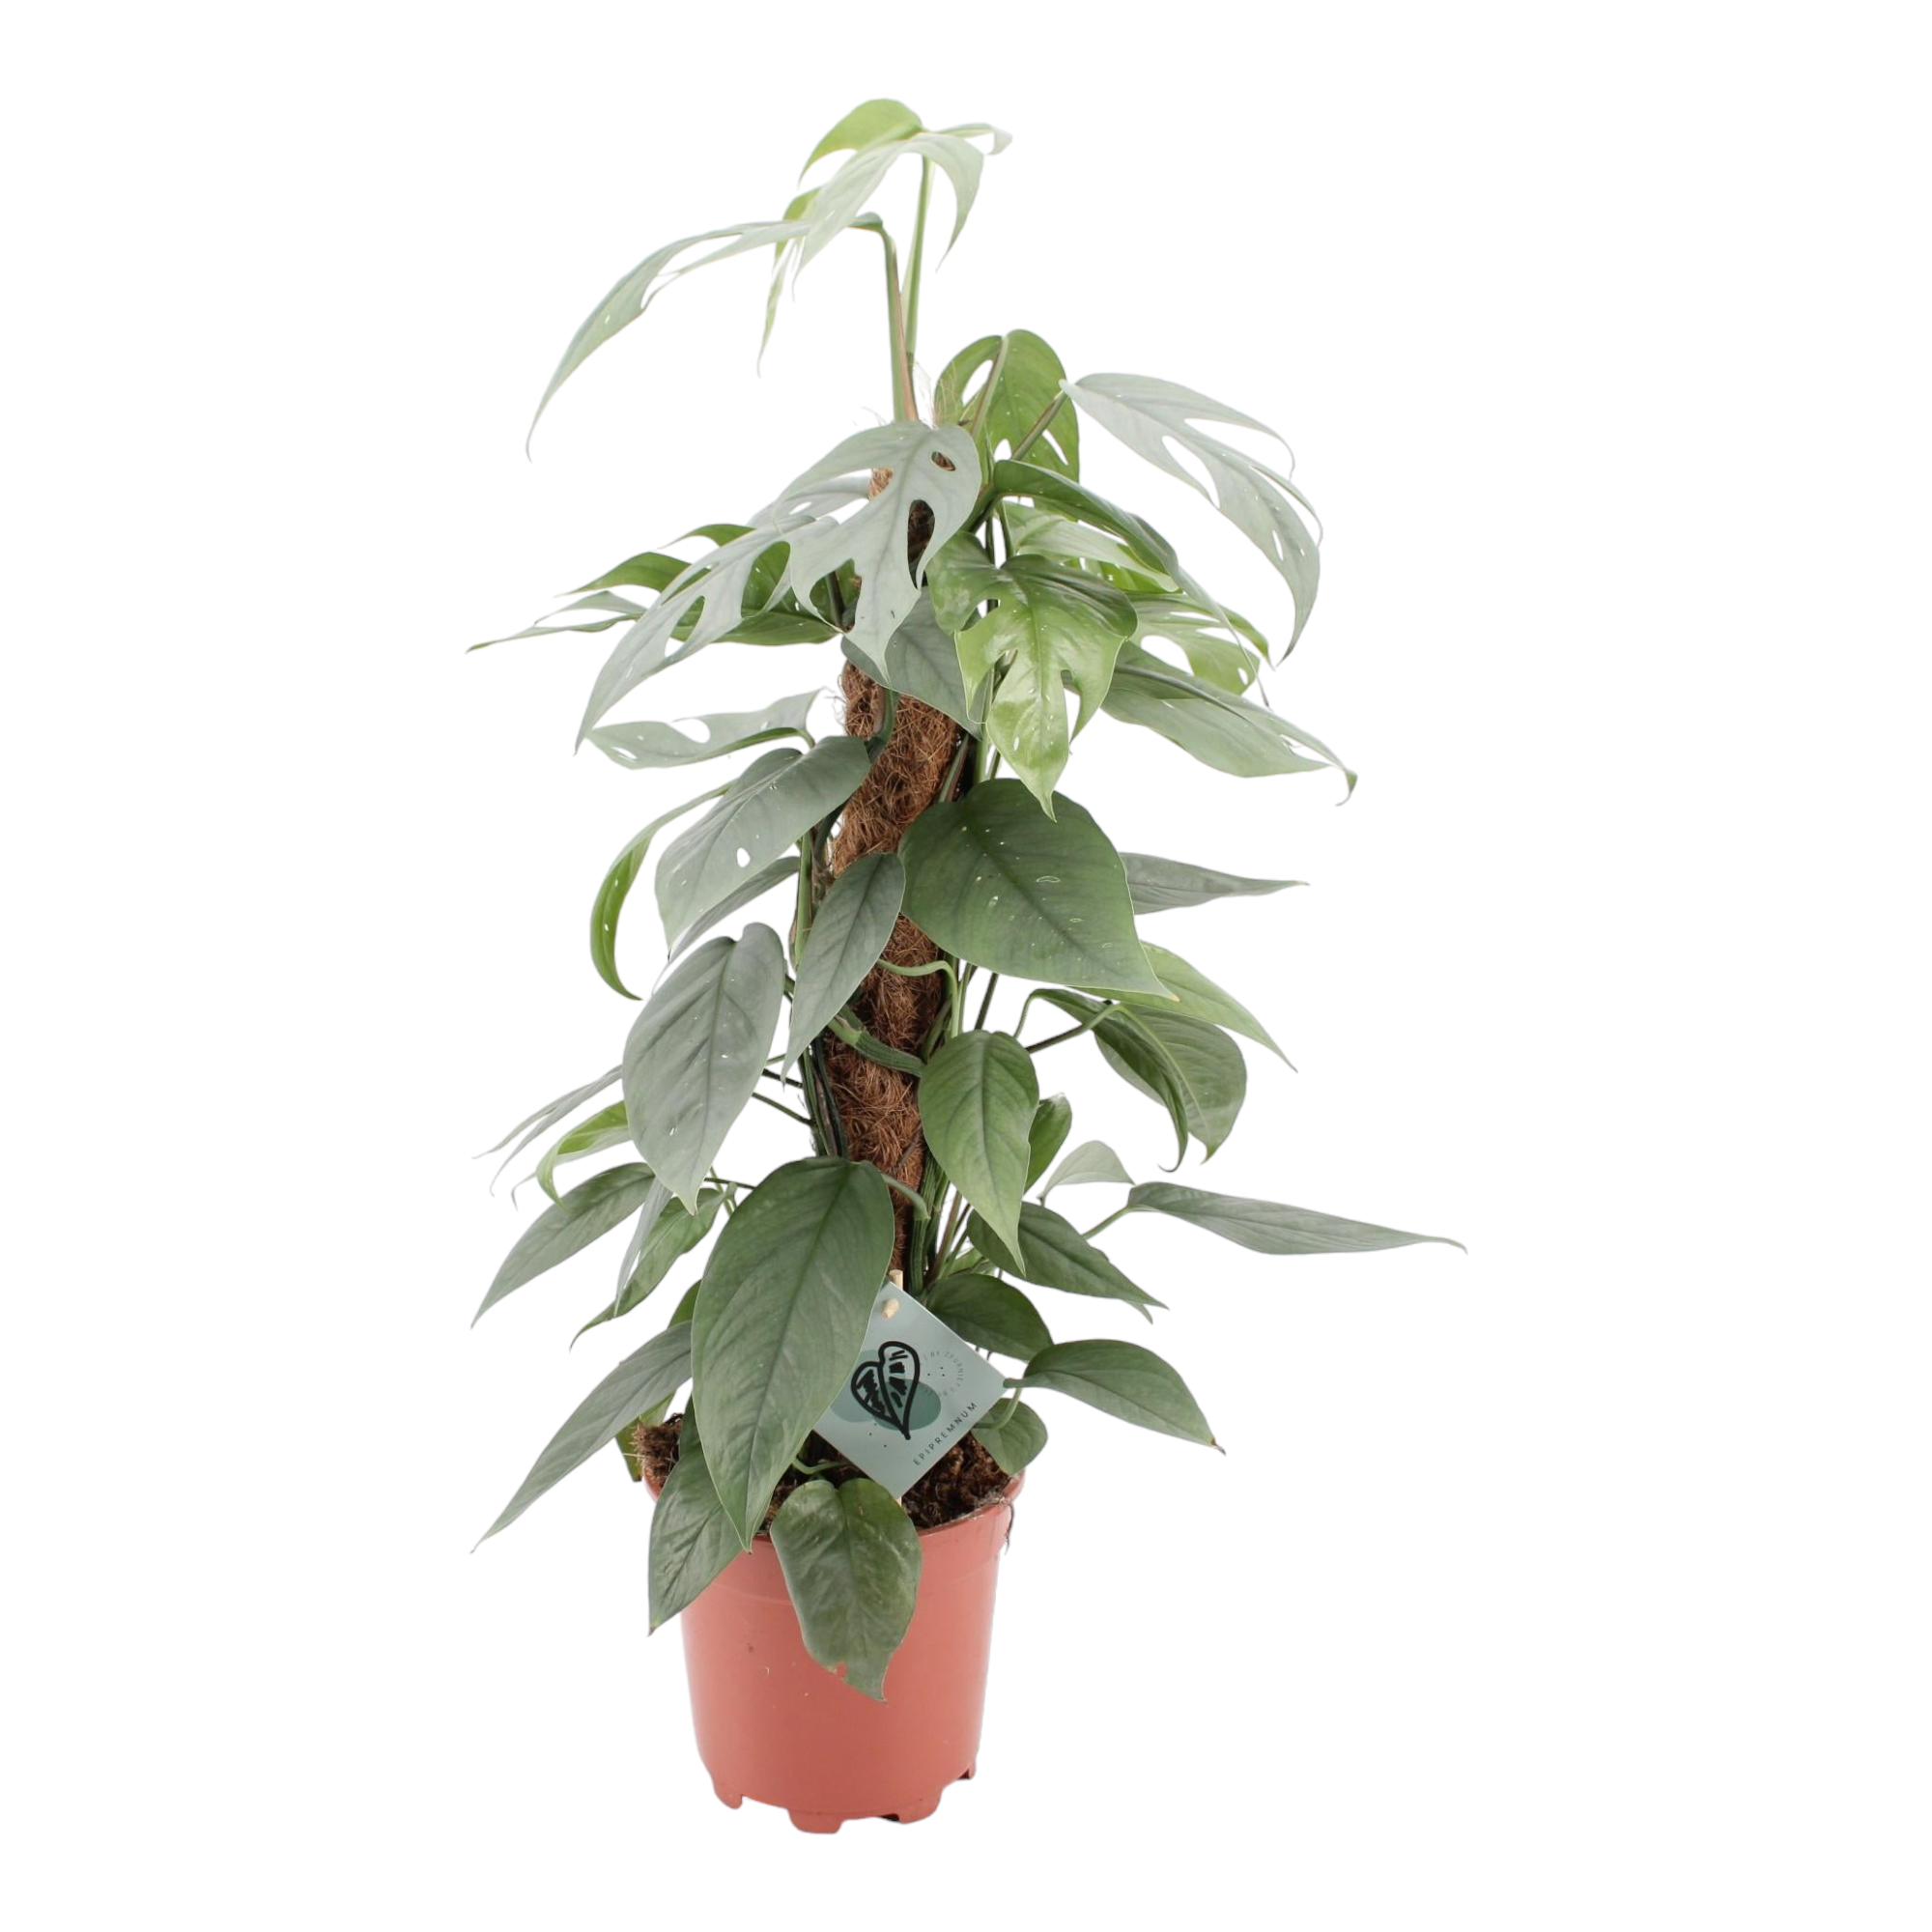 Plante d'intérieur - epipremnum pinnatum cebu blue 60.0cm